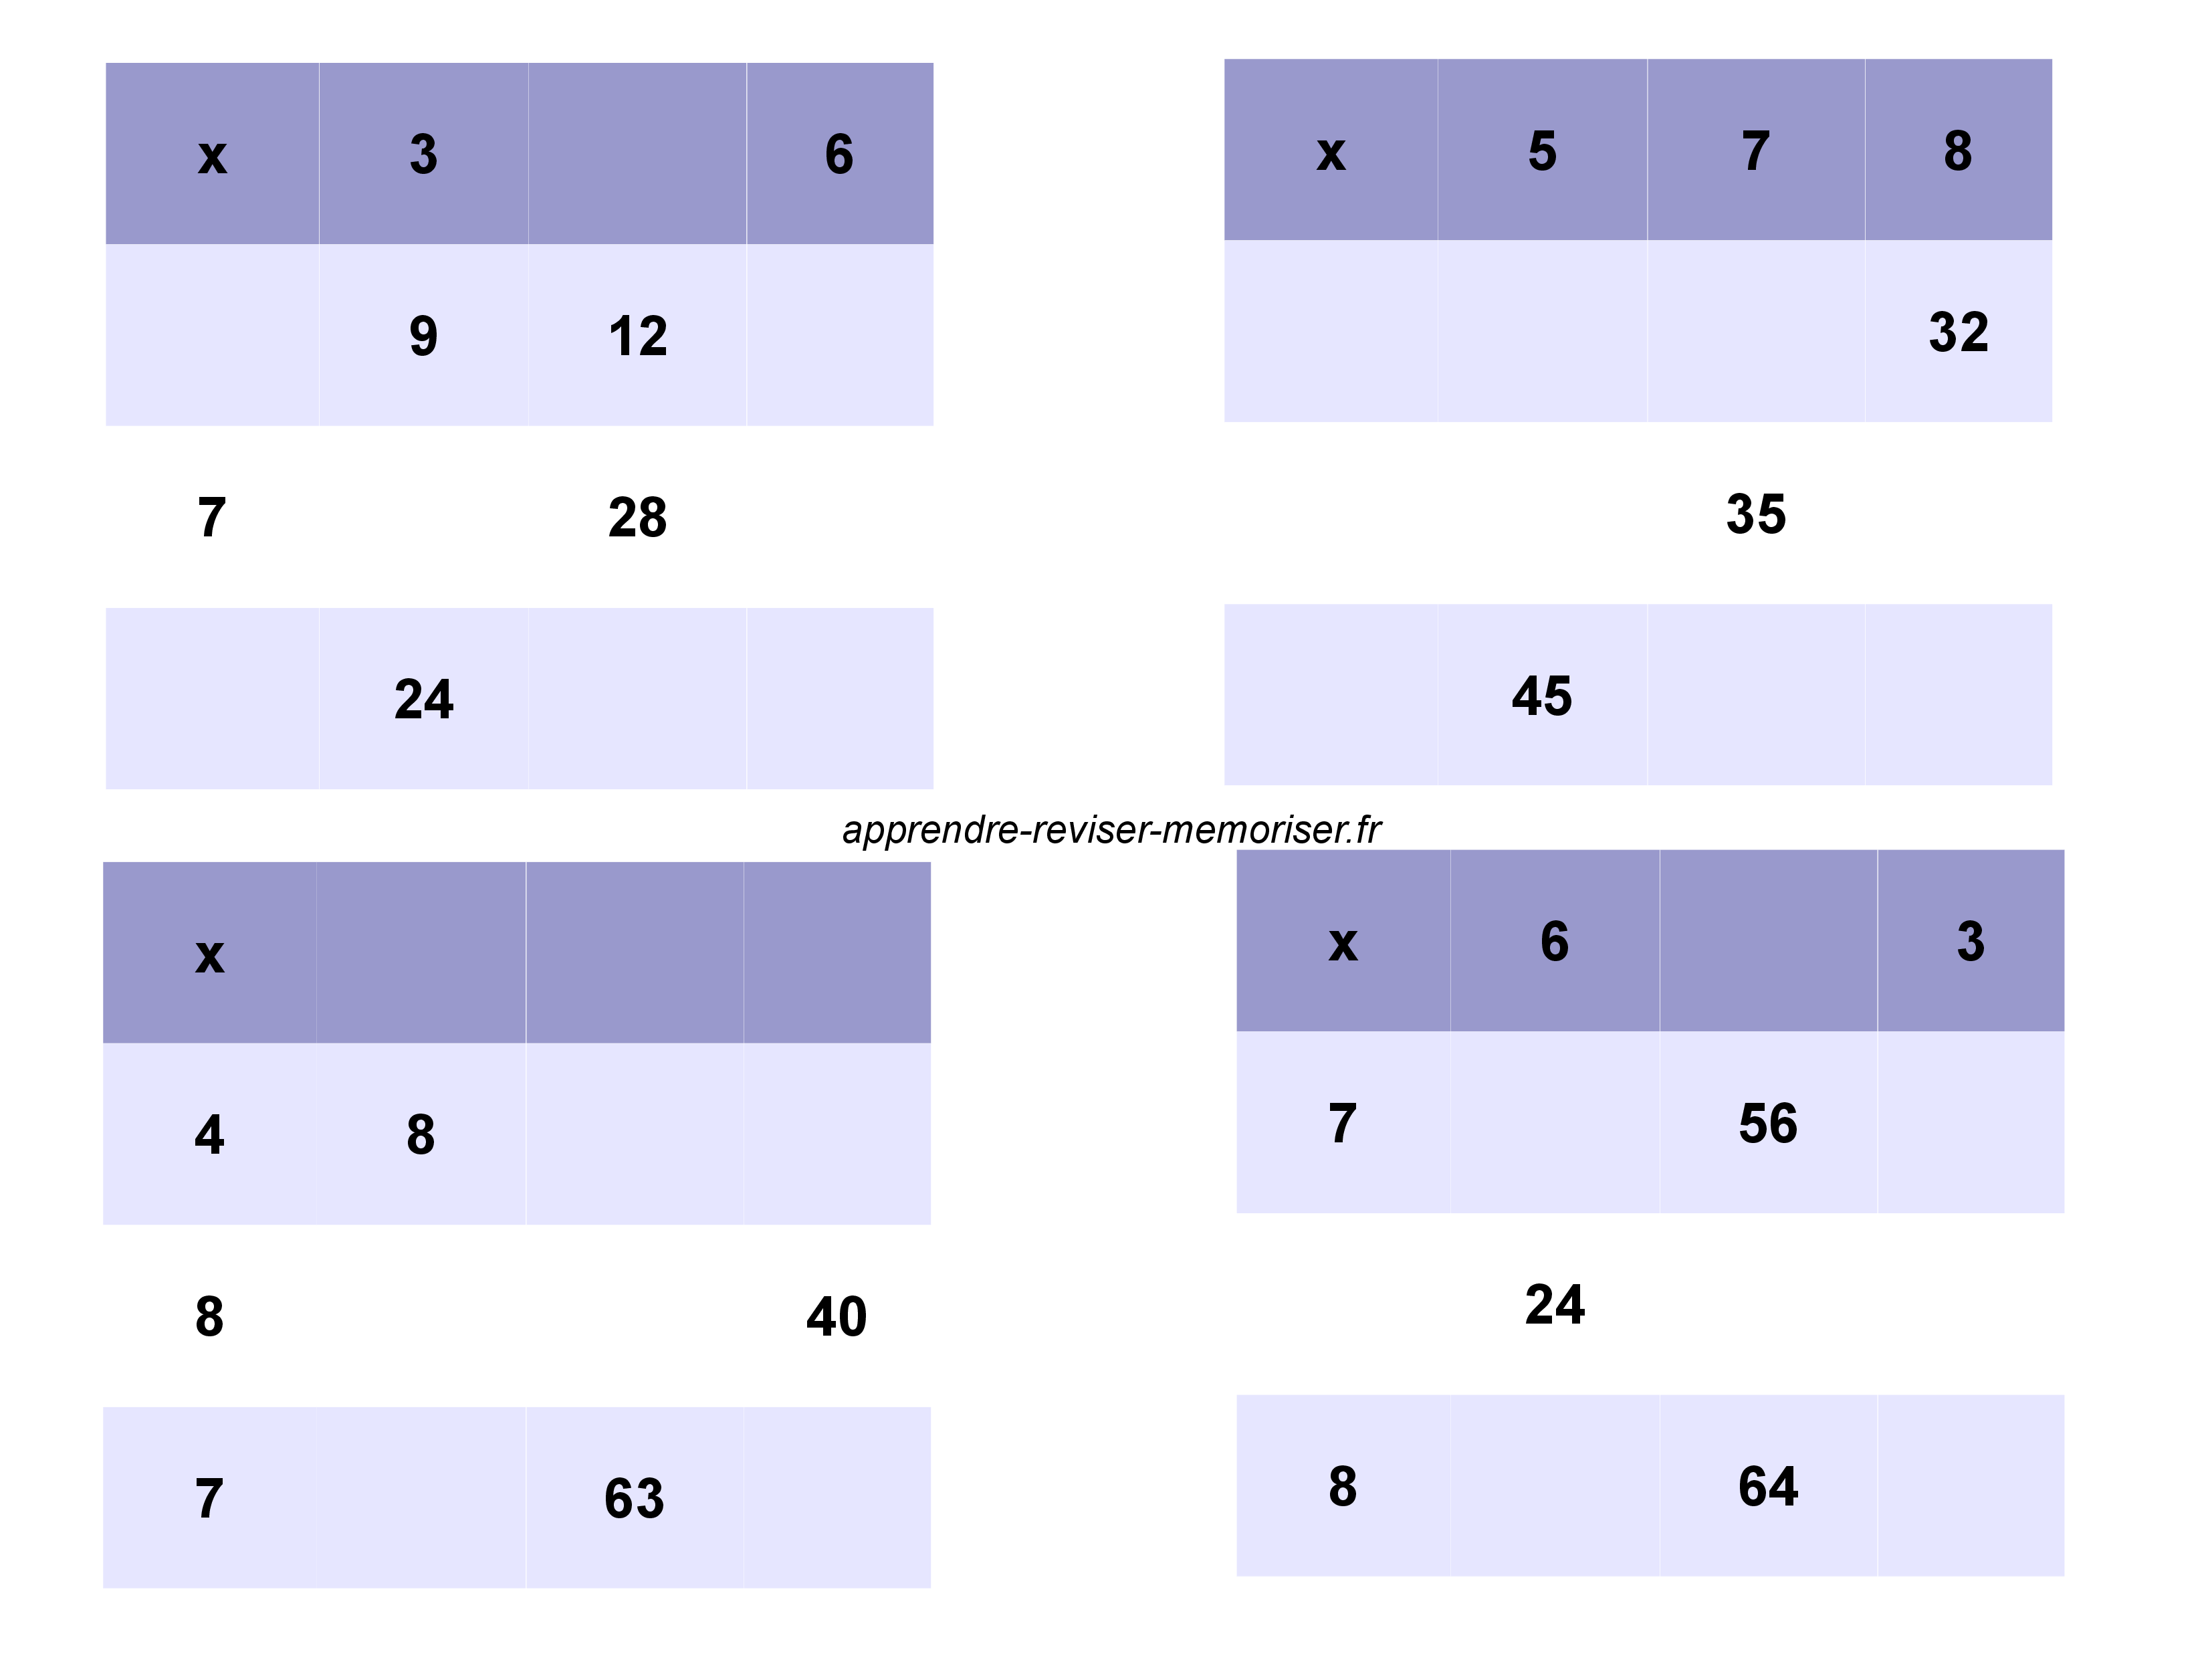 Mistigri des multiplications : un jeu gratuit pour consolider la  mémorisation des tables de multiplication